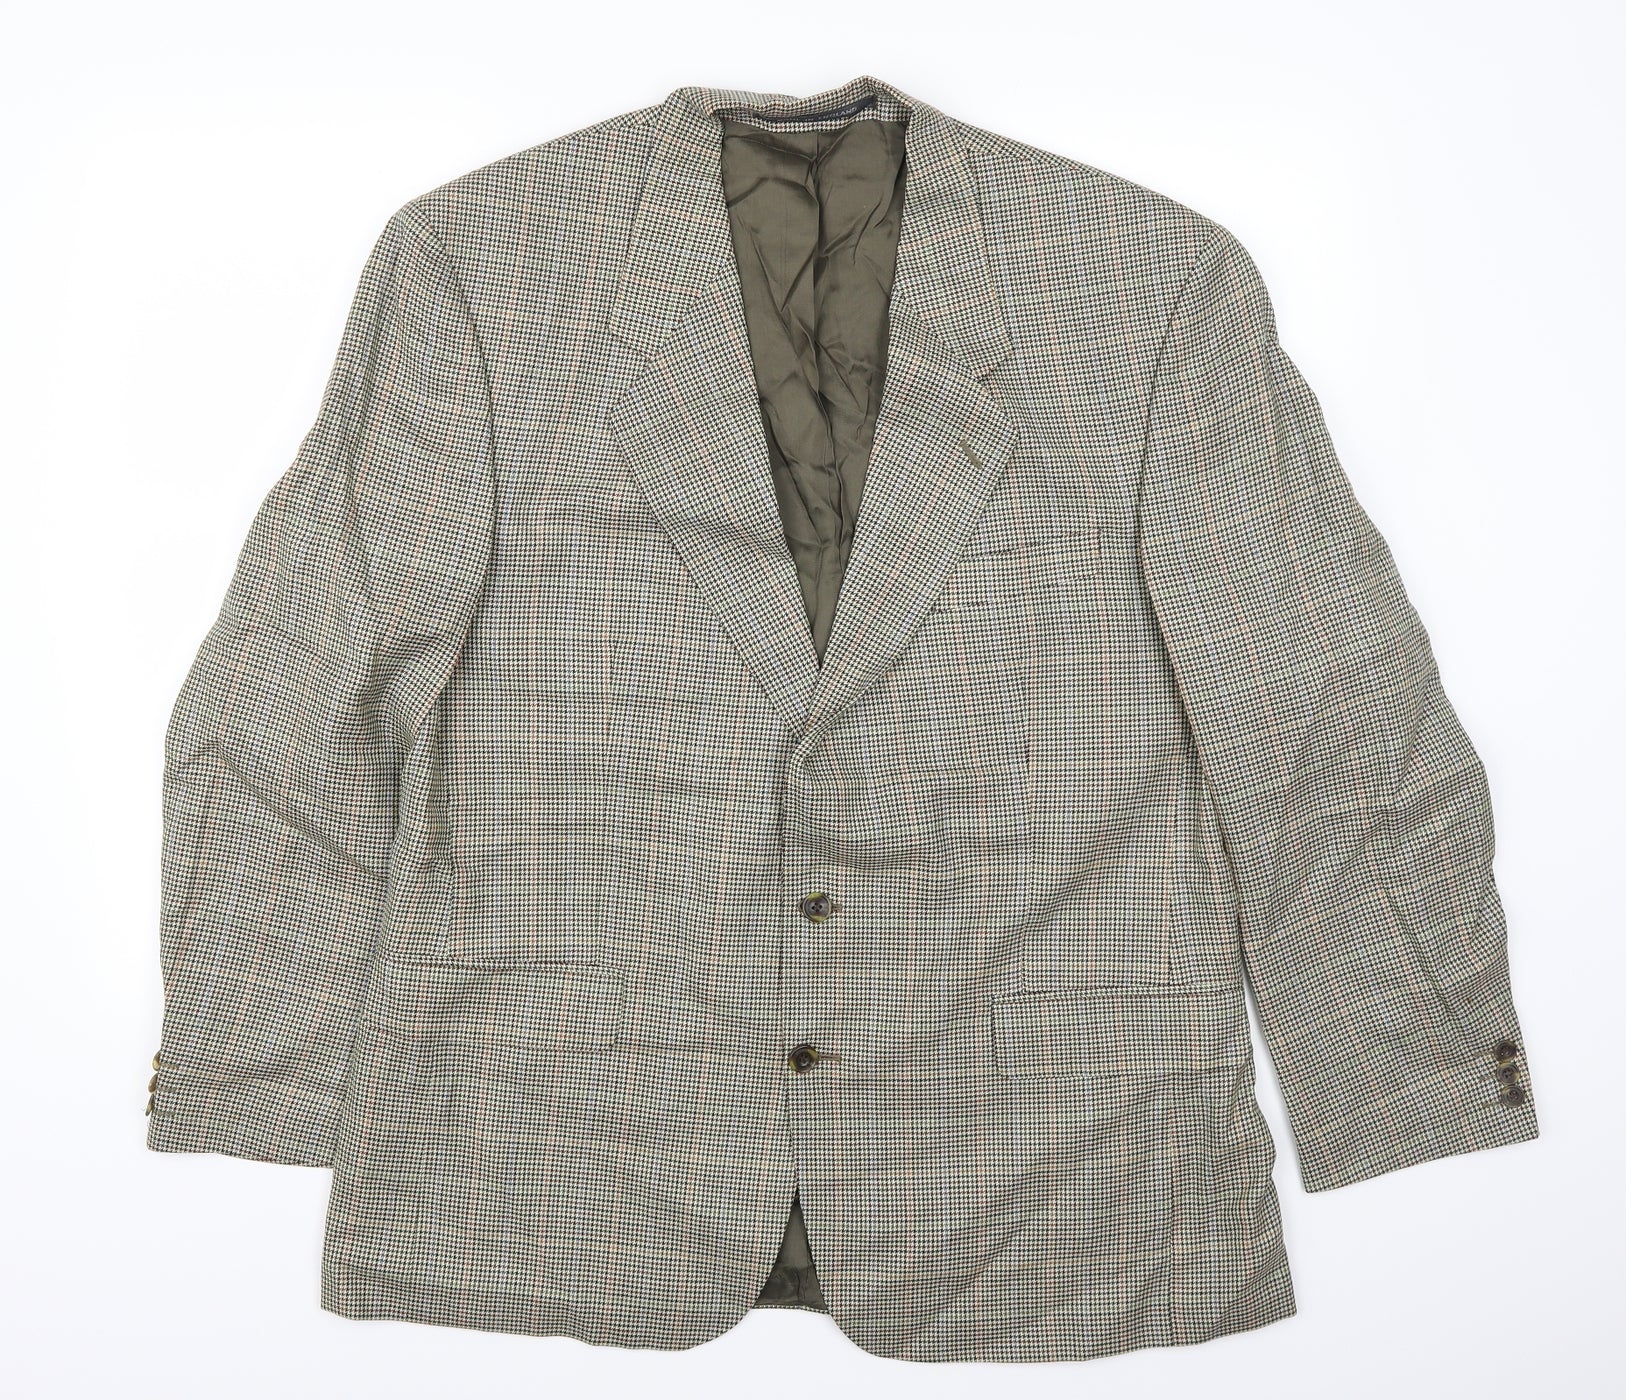 House of Fraser Mens Green Houndstooth Jacket Suit Jacket Size 44 ...